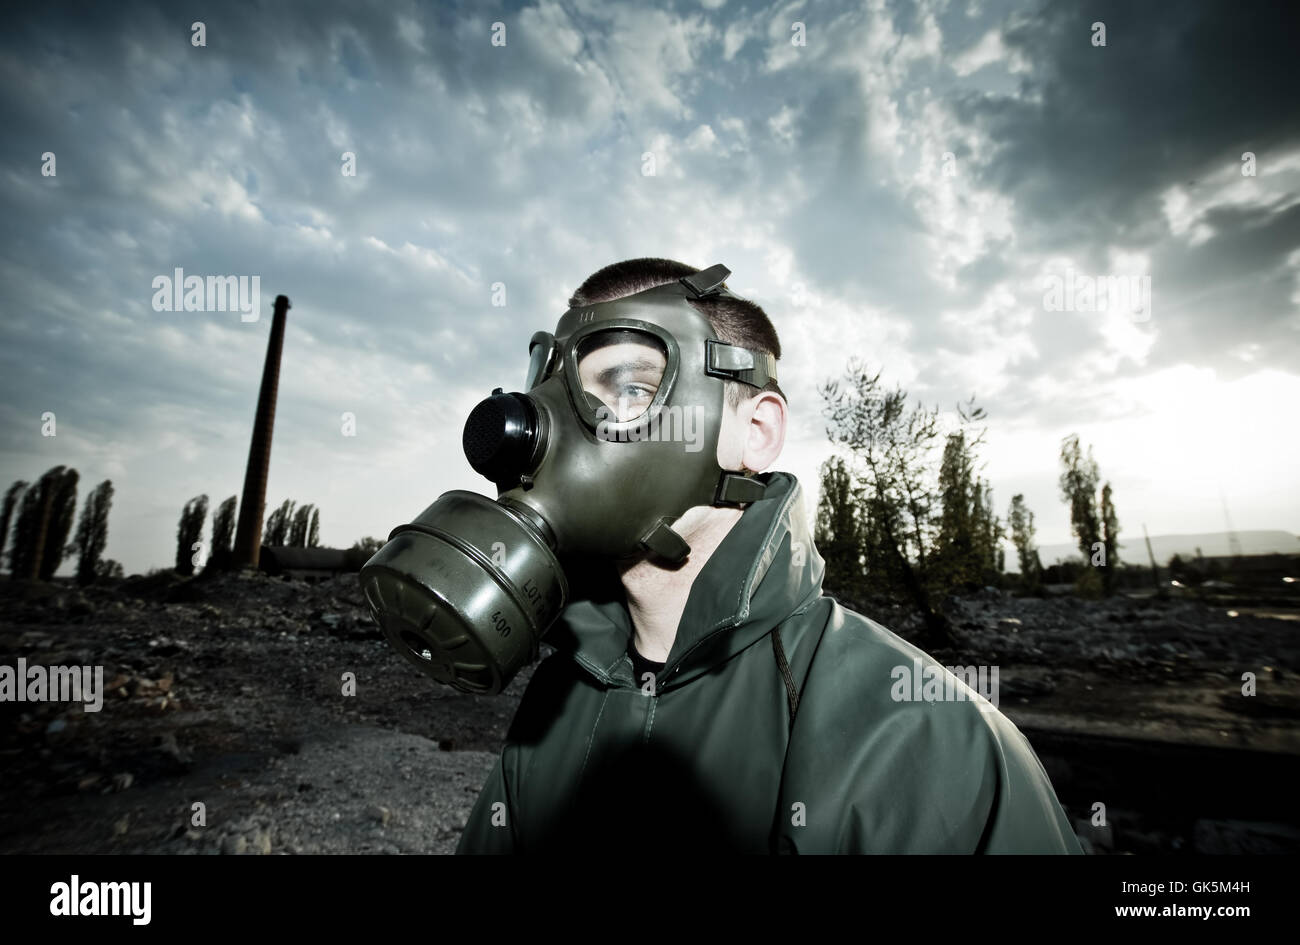 Masque à gaz protection respiratoire en cas de catastrophe Banque D'Images